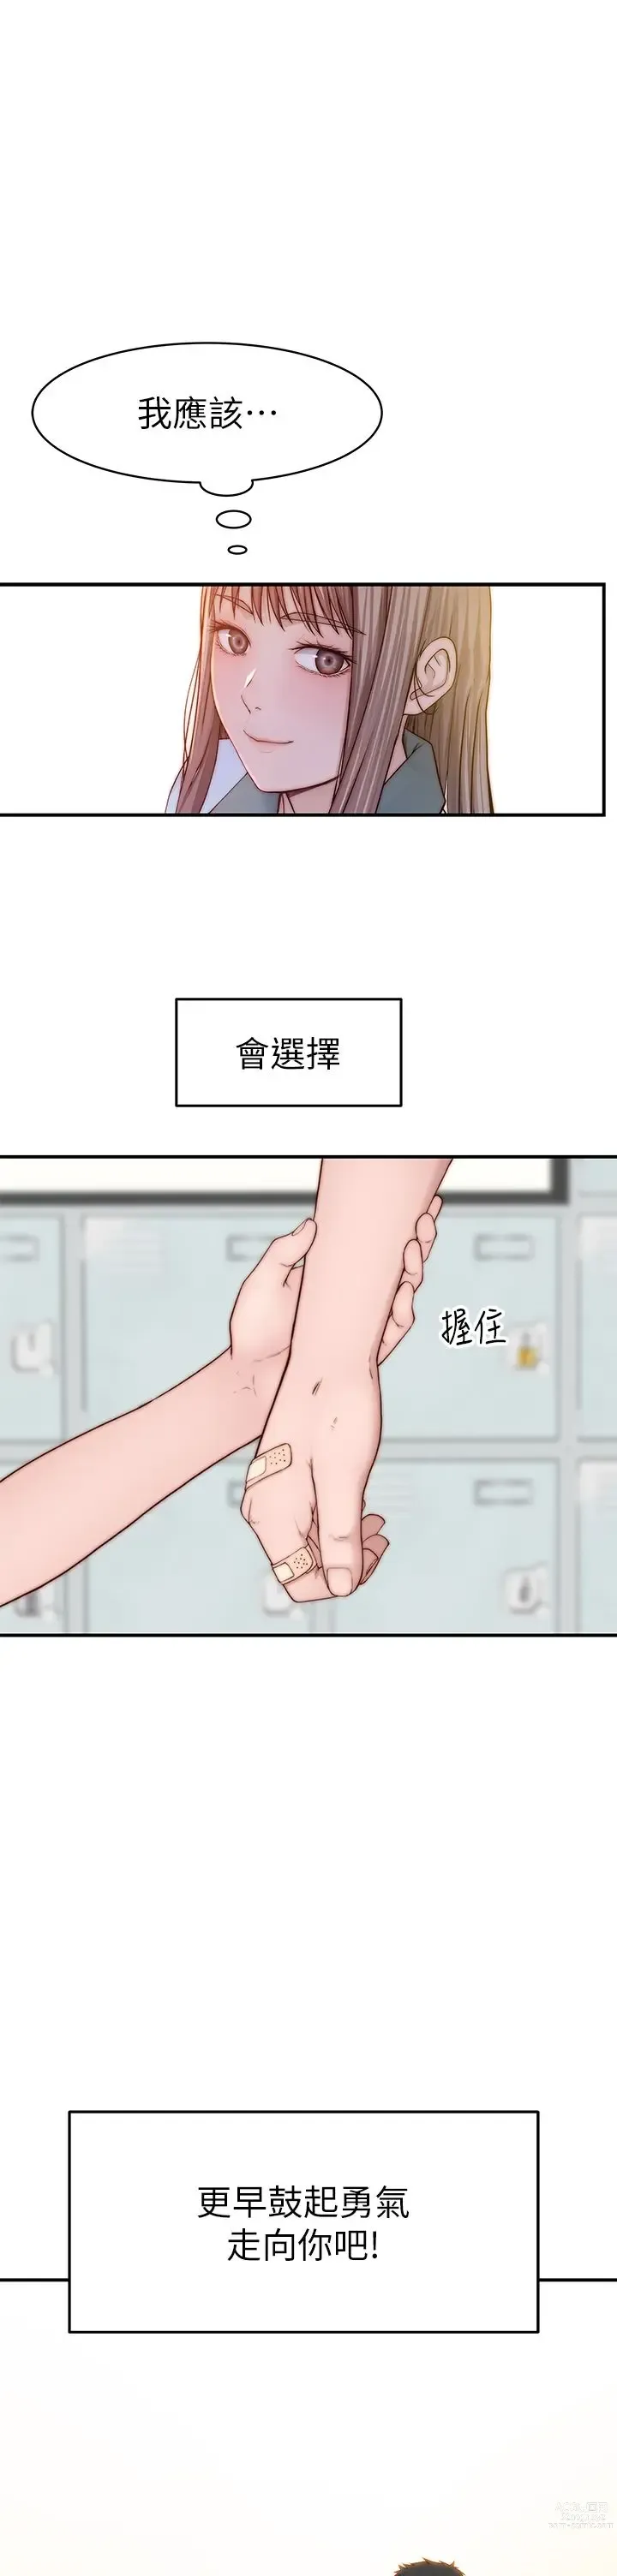 Page 1891 of manga 我们的特殊关系／Between Us [中文] [已完结]（下）